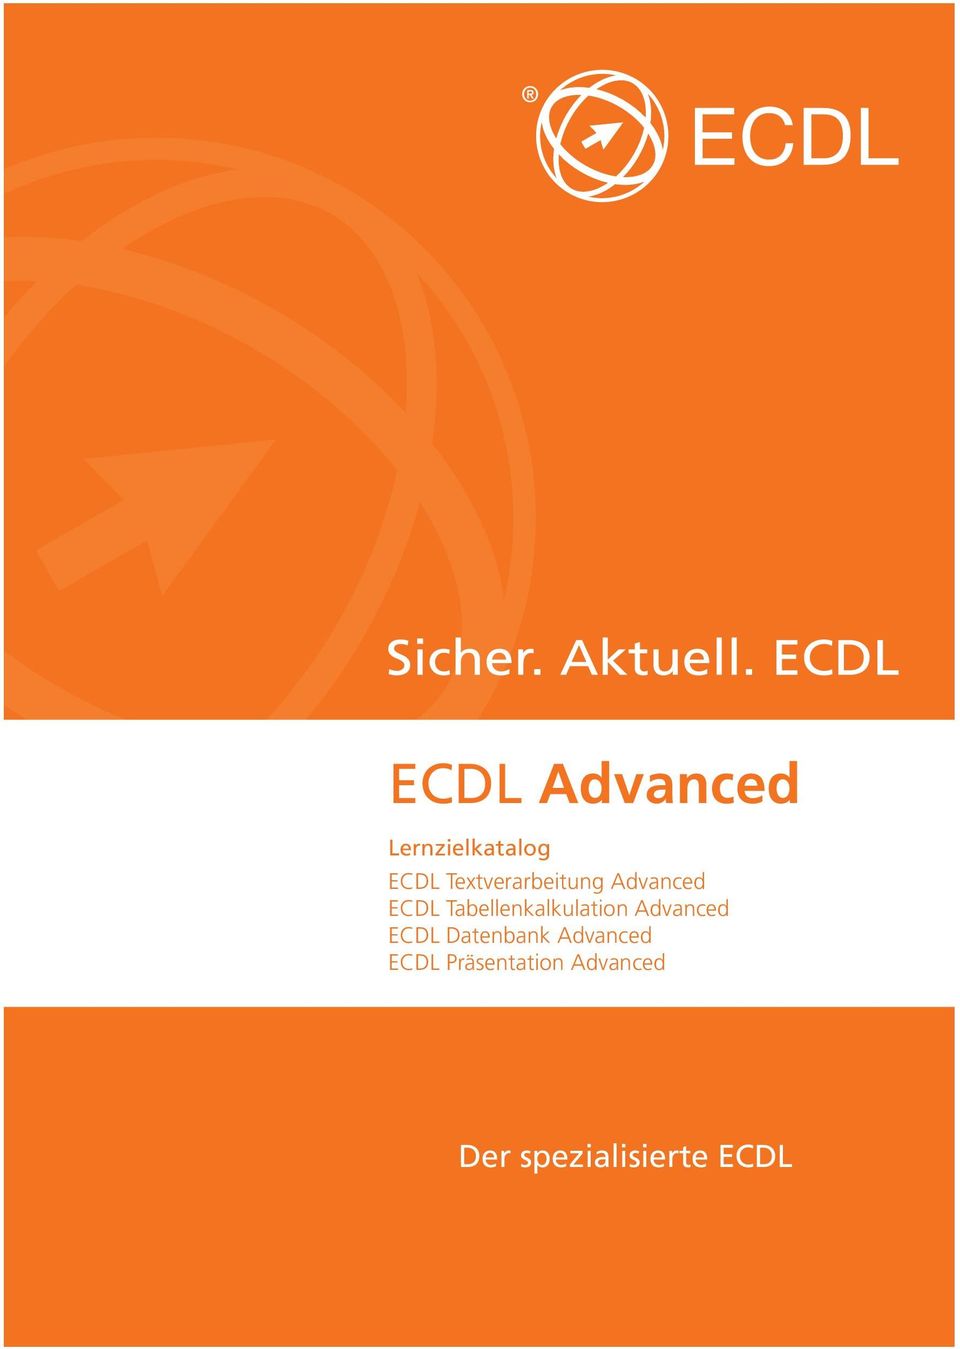 Advanced ECDL Datenbank Advanced ECDL